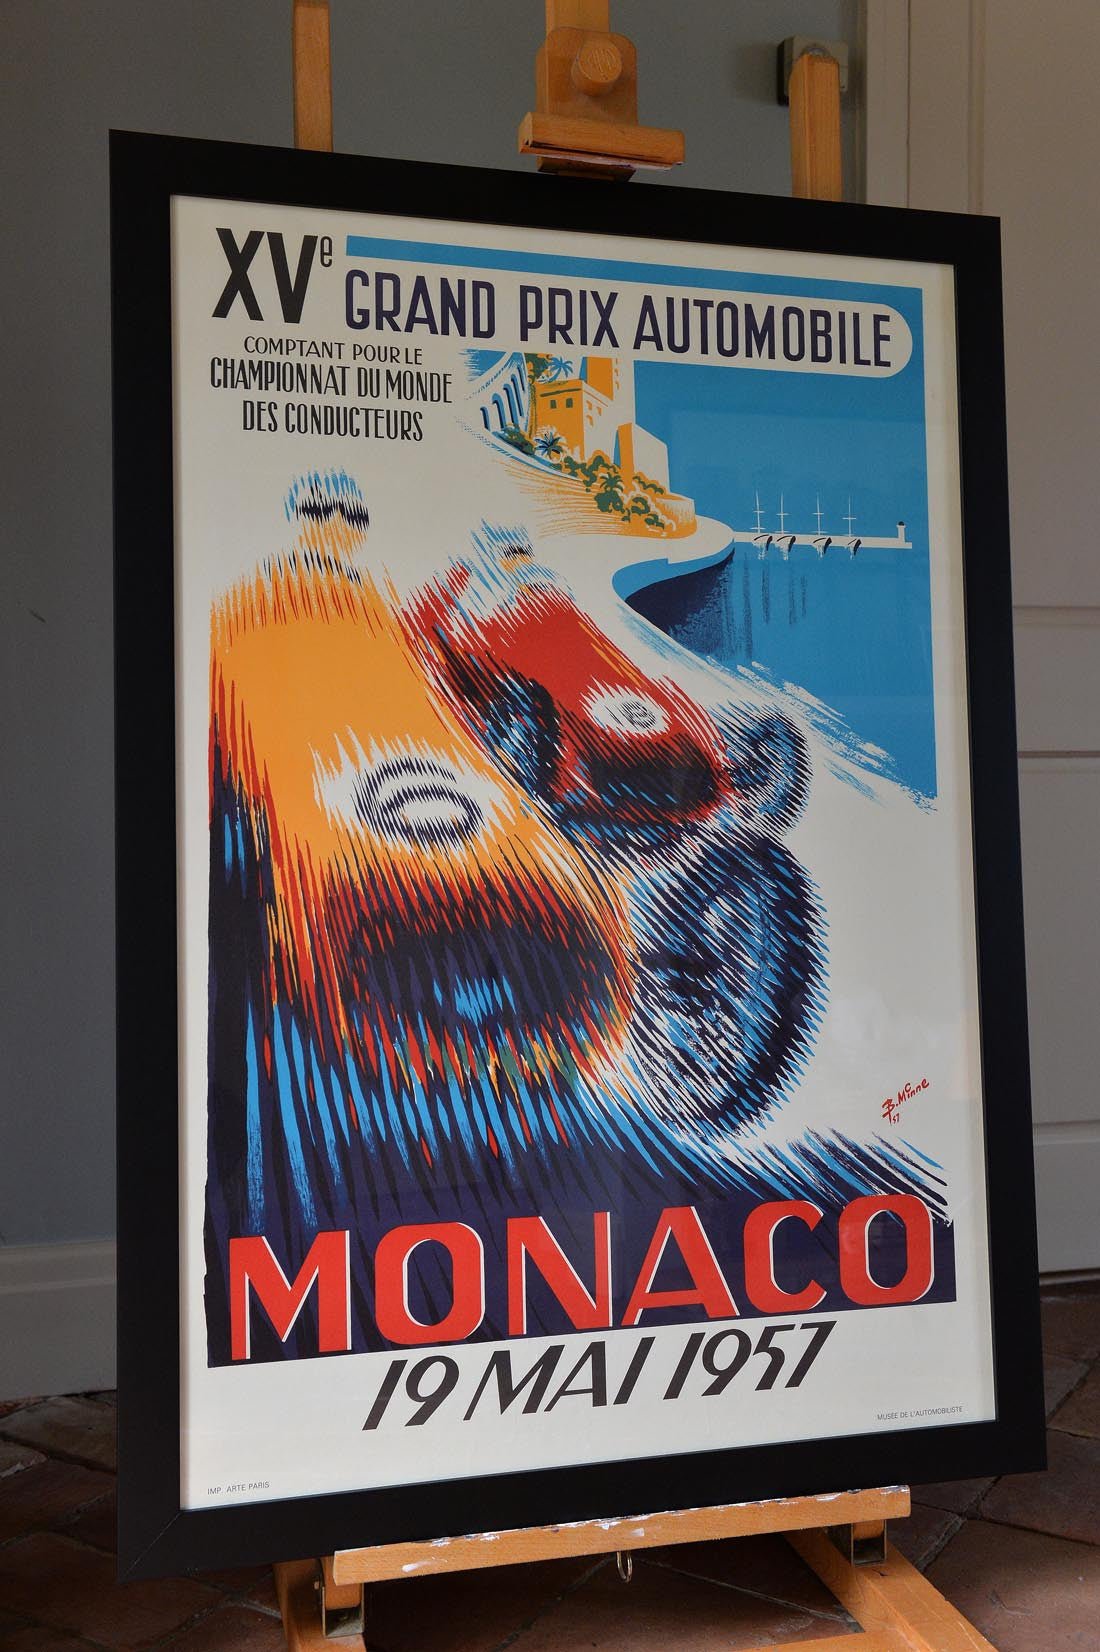 Monaco Grand Prix poster -19 Mai 1957 - Natalia Willmott